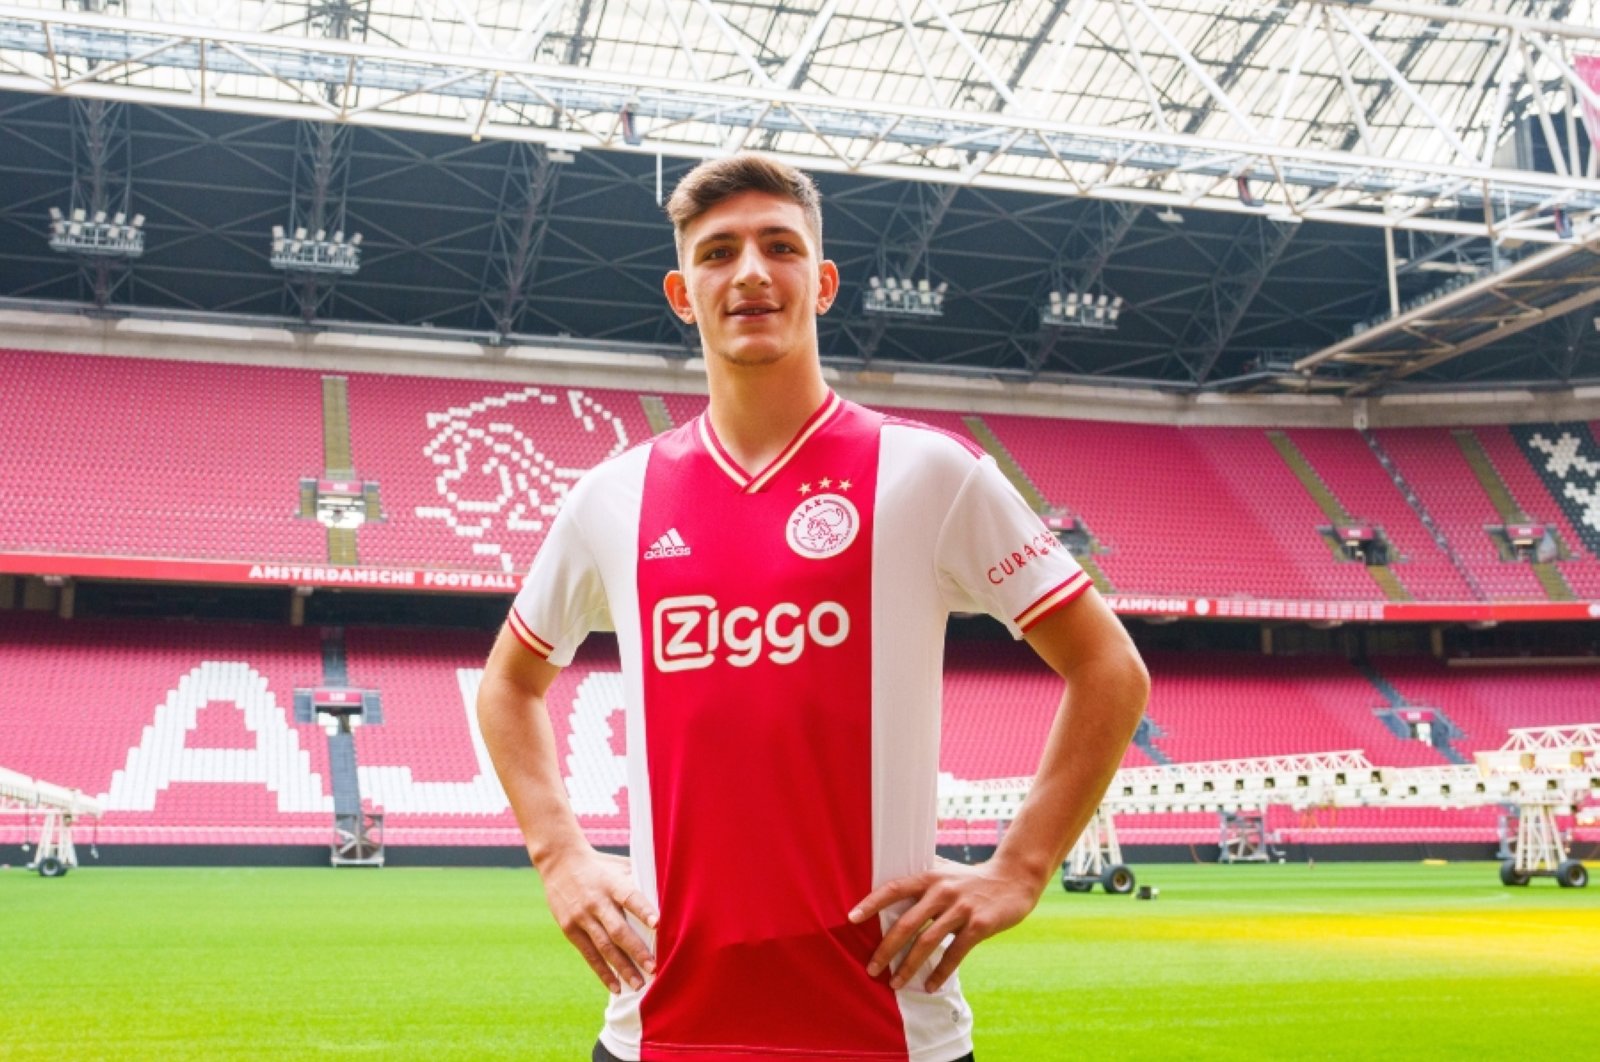 Raksasa Belanda Ajax merekrut bek Turki Kaplan dari Trabzonspor